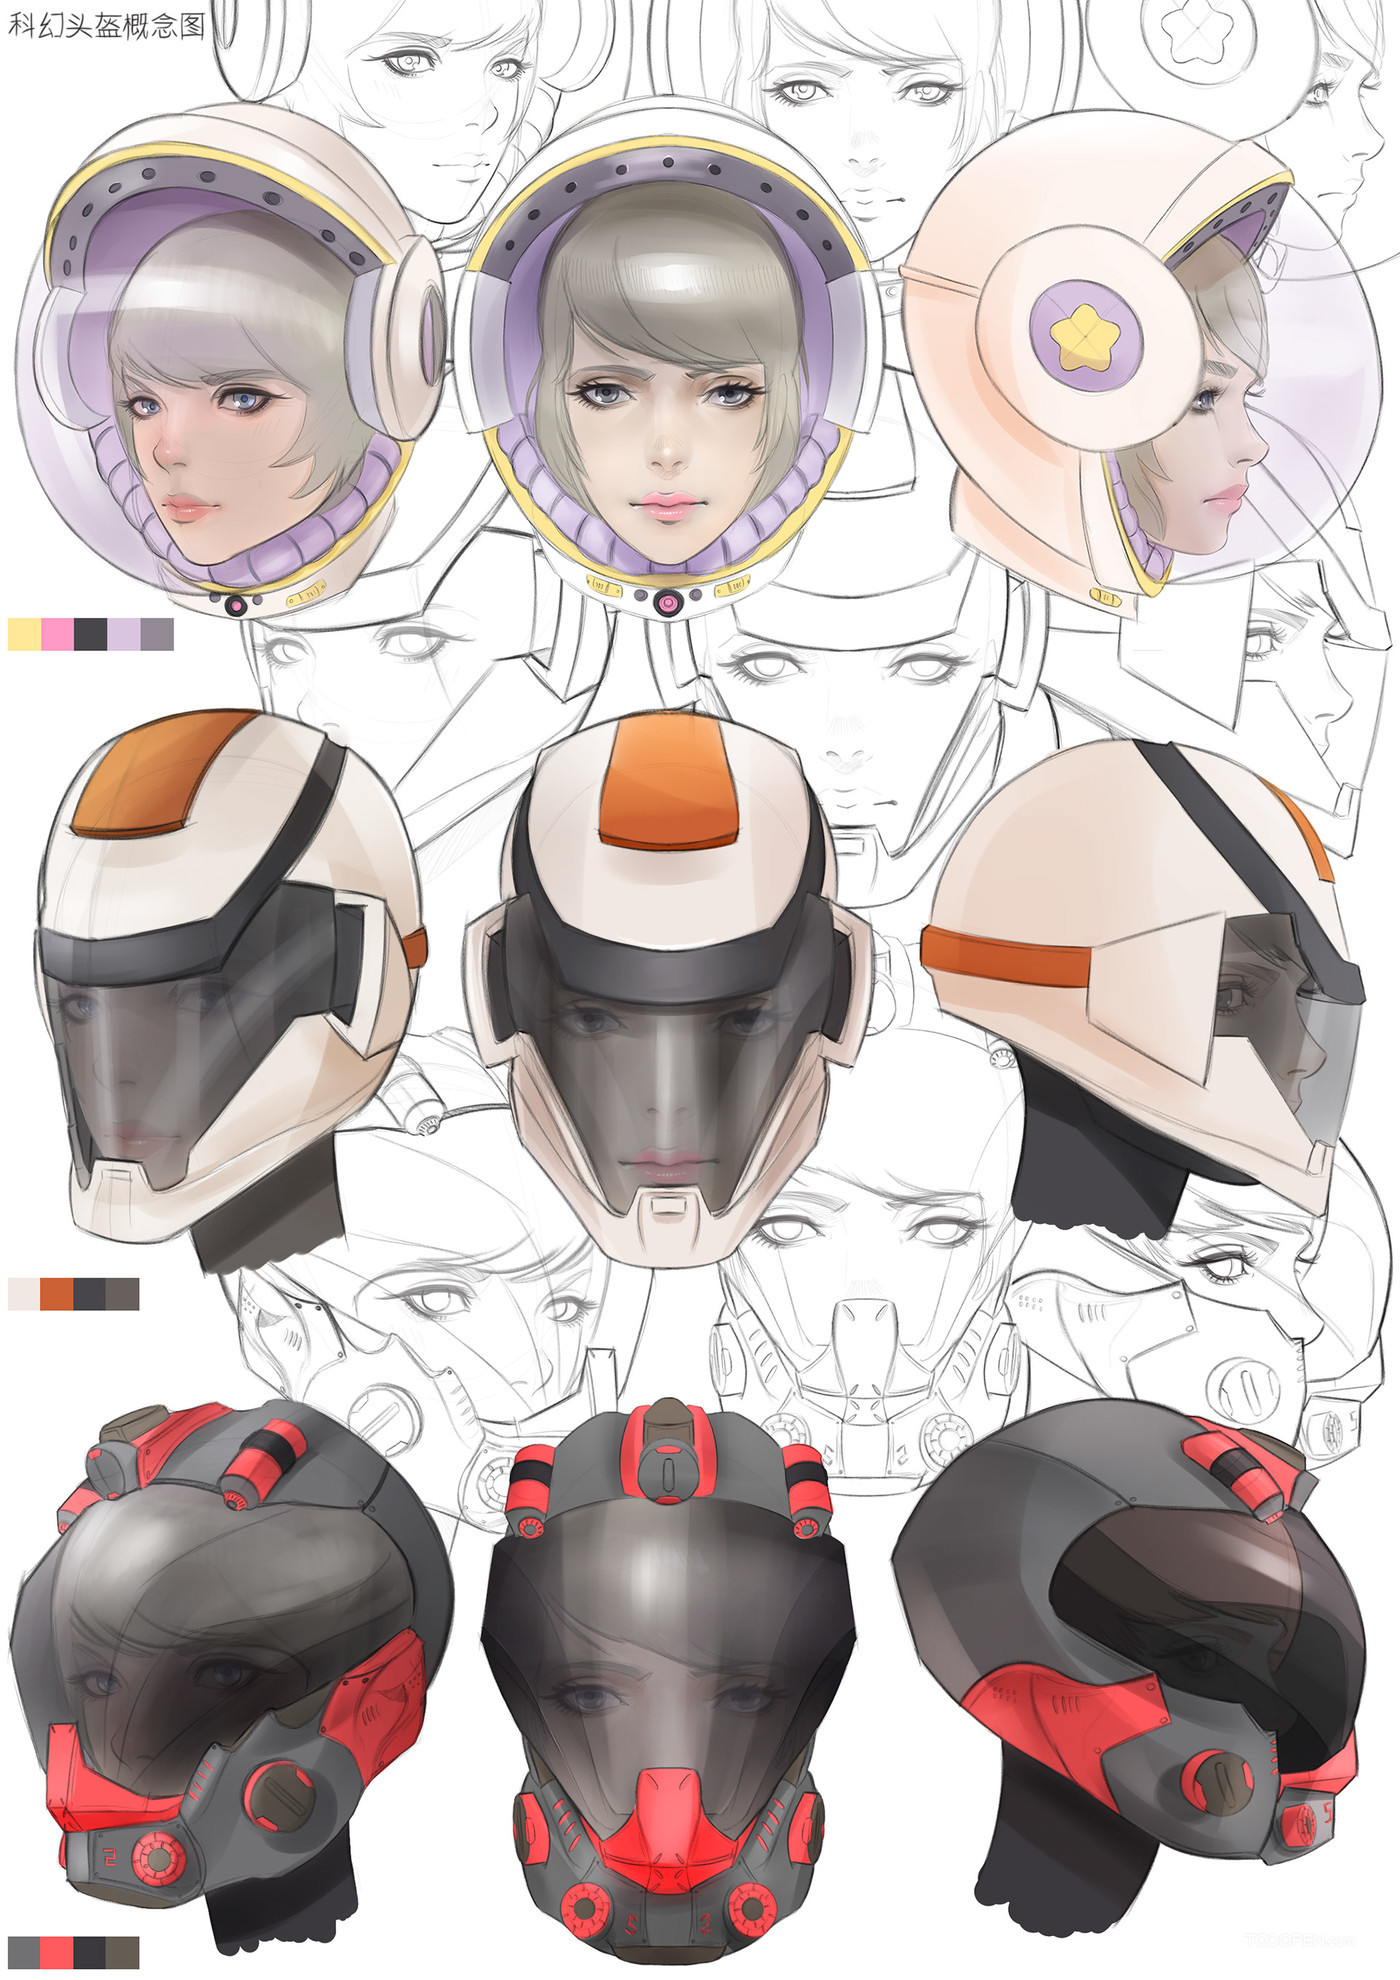 科幻头盔概念动漫设计欣赏-04